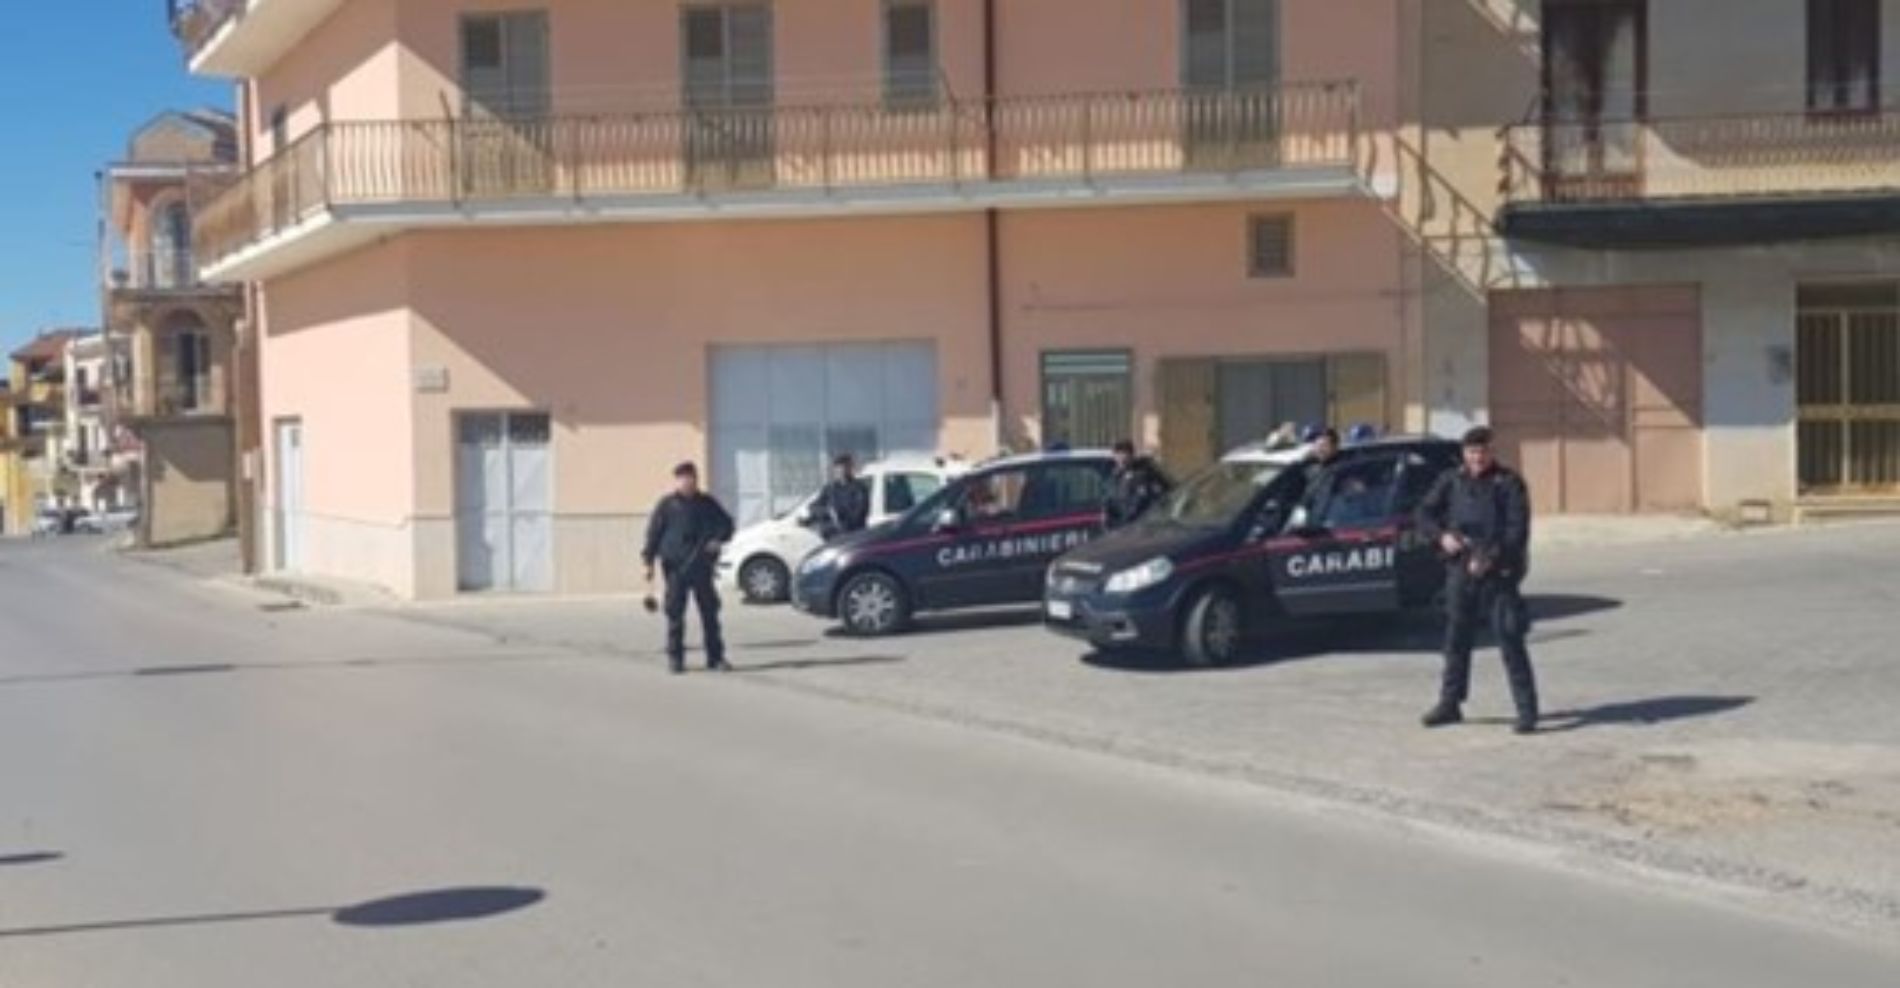 Barrafranca Controllo del territorio, tratta in arresto una persona in esecuzione ordinanza per espiazione pena detentiva;